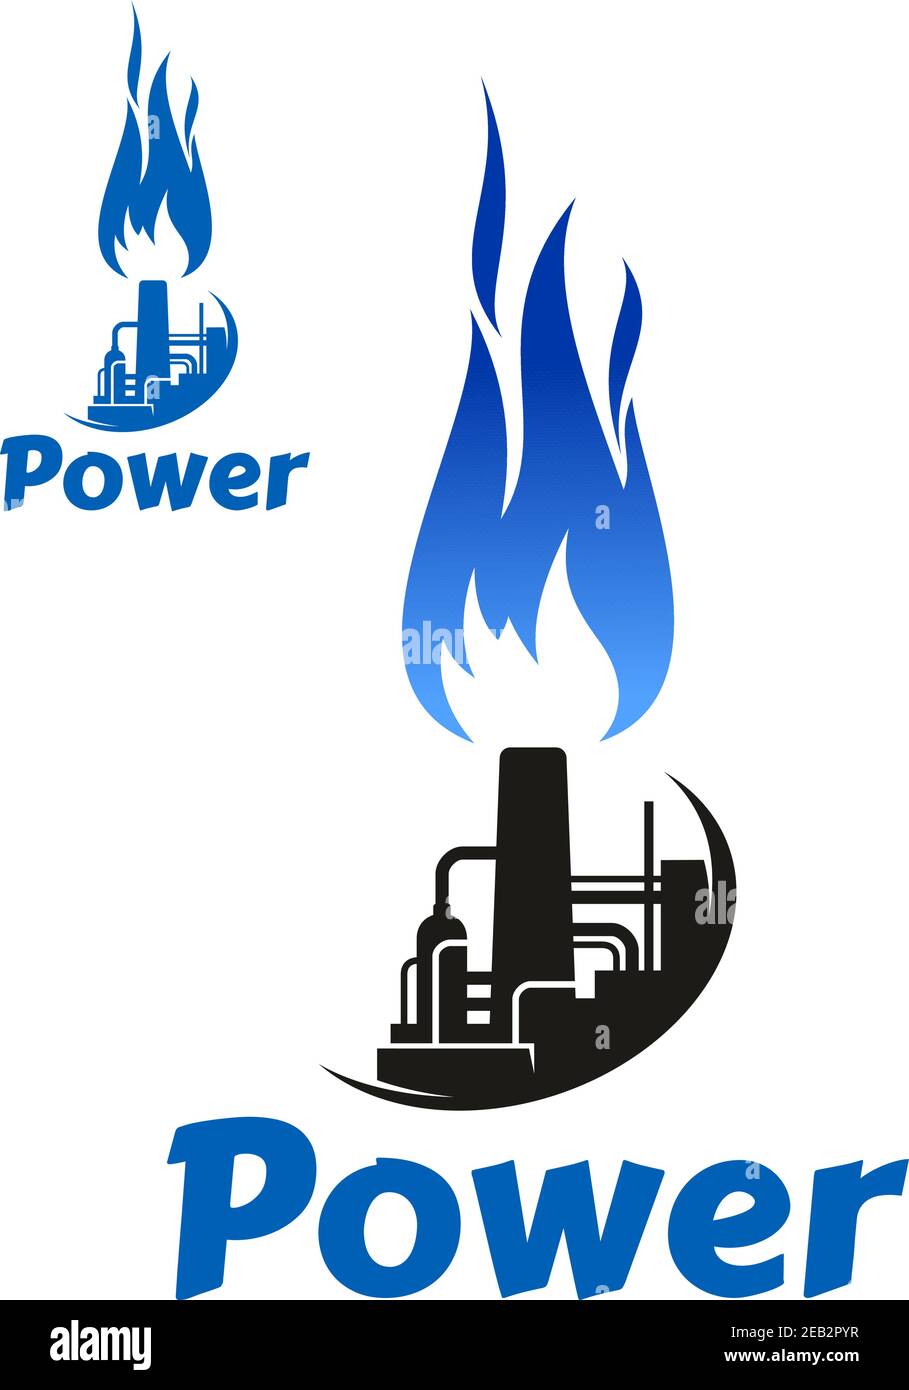 Industrielles Symbol oder Symbol mit Ölraffinerie Fabrik, Vorratstank, Turm, Kamin und hohe blaue Flamme. Isoliert auf weißem Hintergrund, mit Beschriftung Powe Stock Vektor